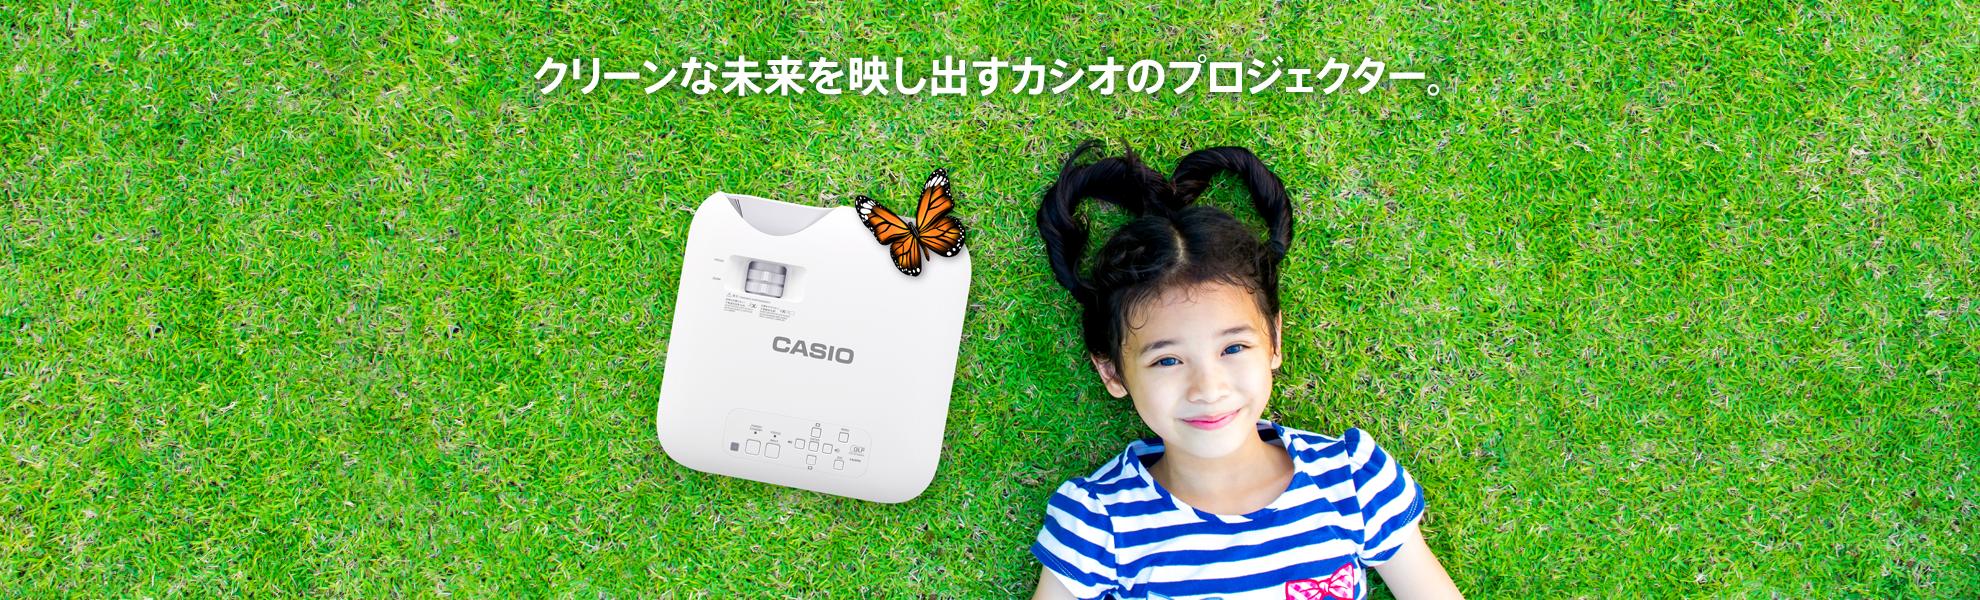 水銀ゼロのクリーンな未来へ Casio